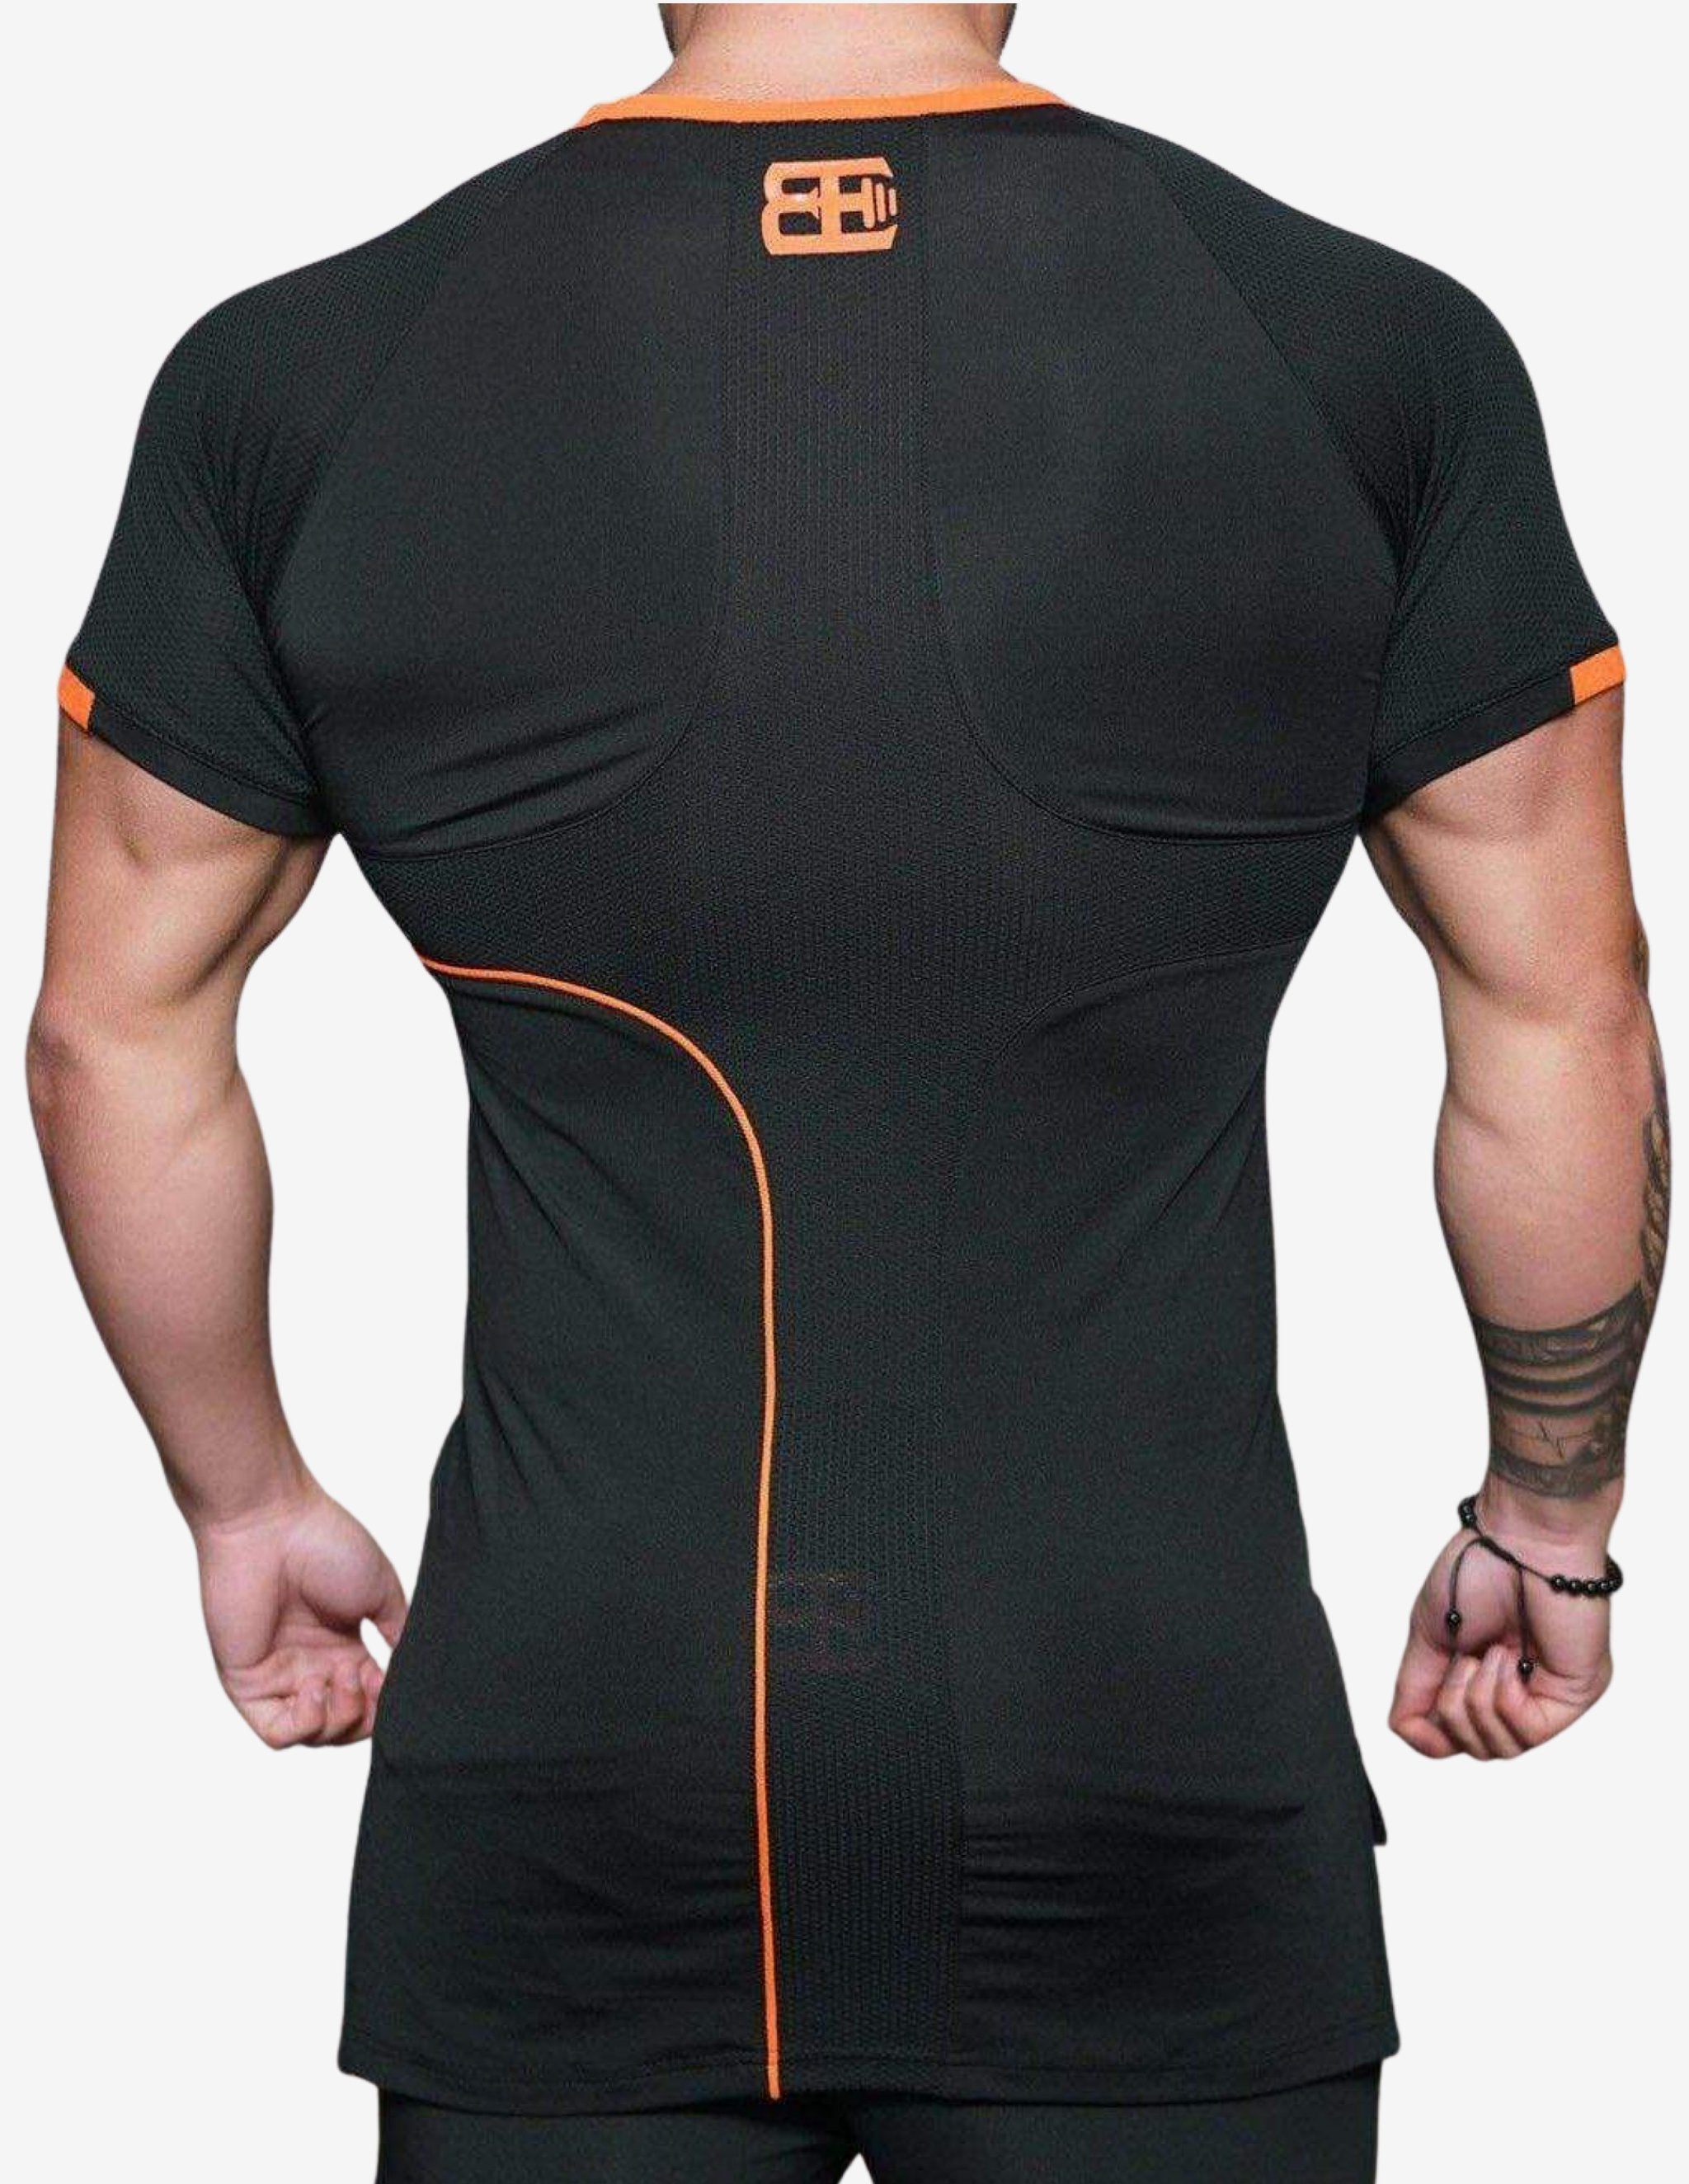 Anax Black Orange Shirt-T-shirt Man-Body Engineers-Guru Muscle